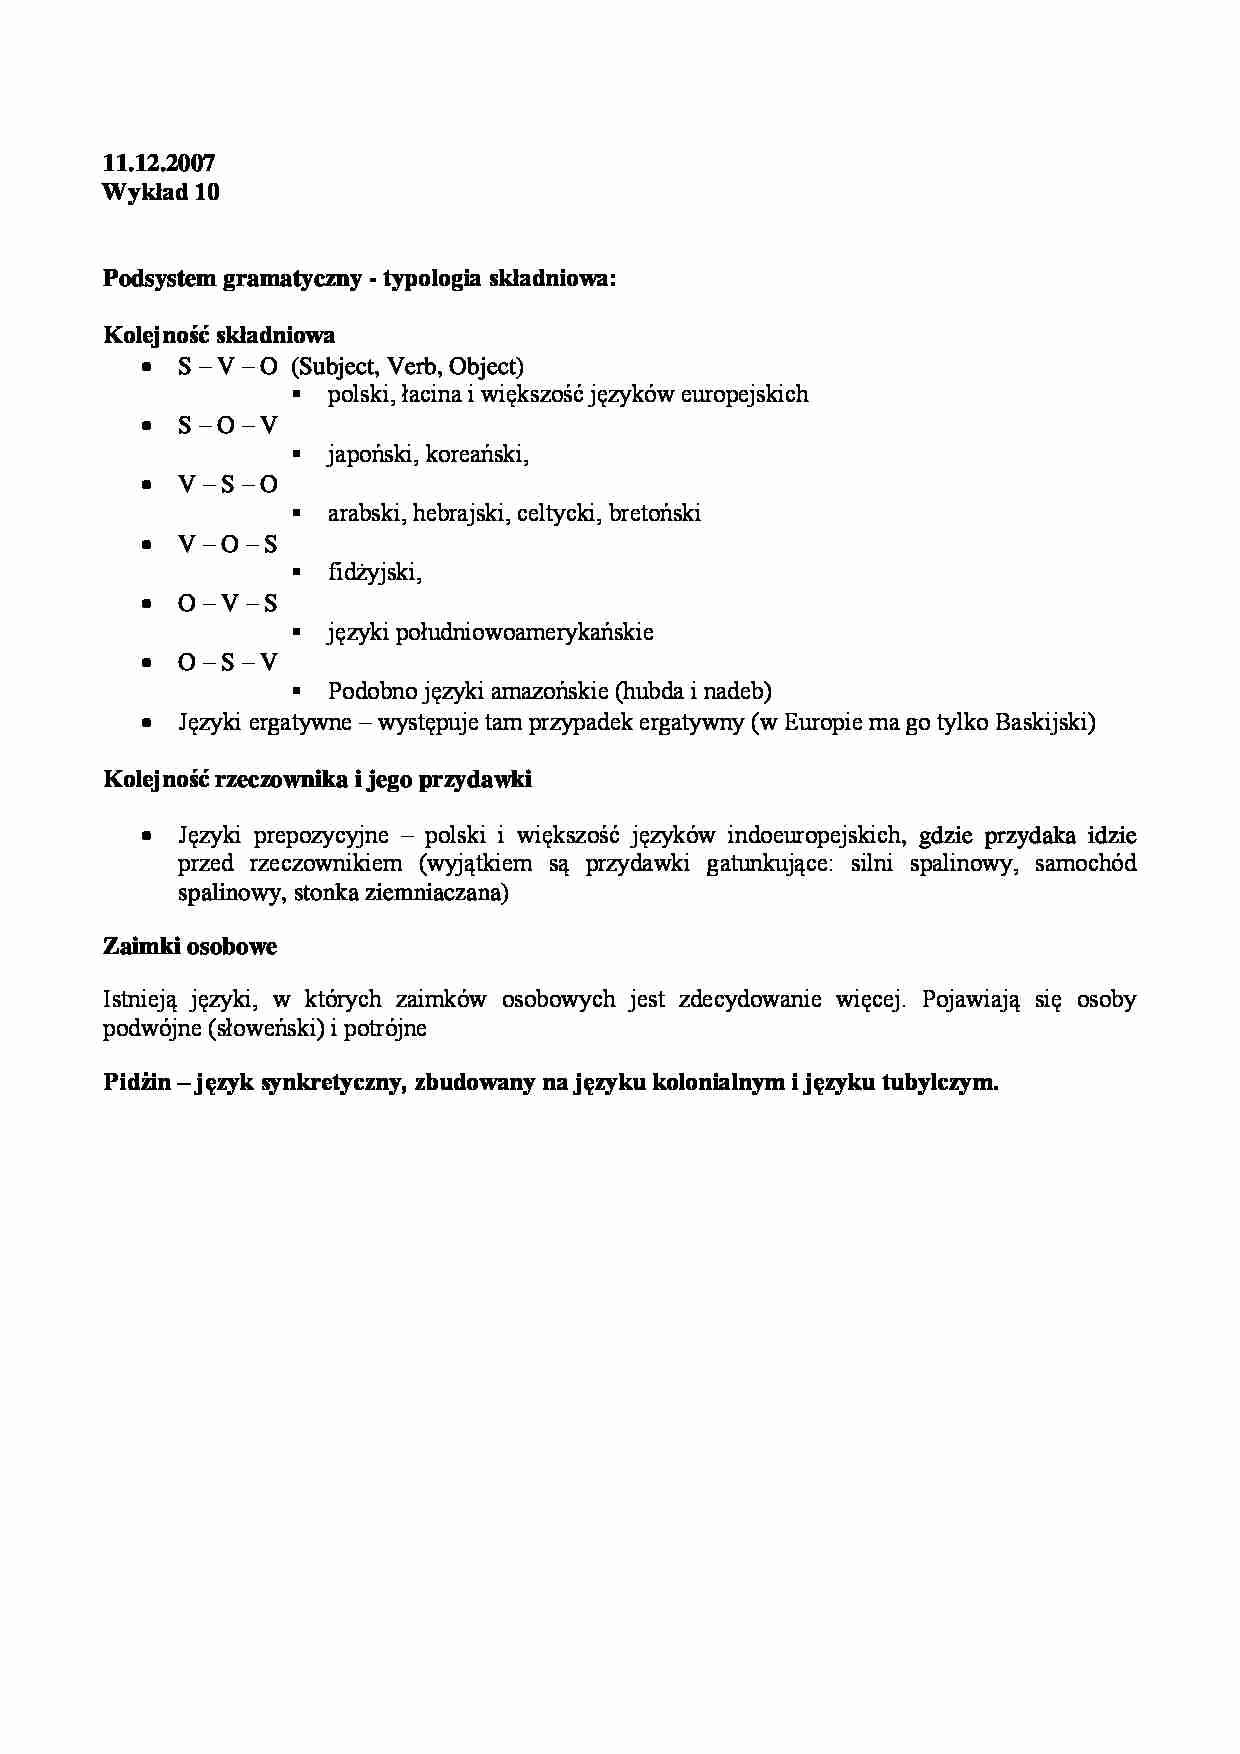 Podsystem gramatyczny - typologia składniowa - strona 1